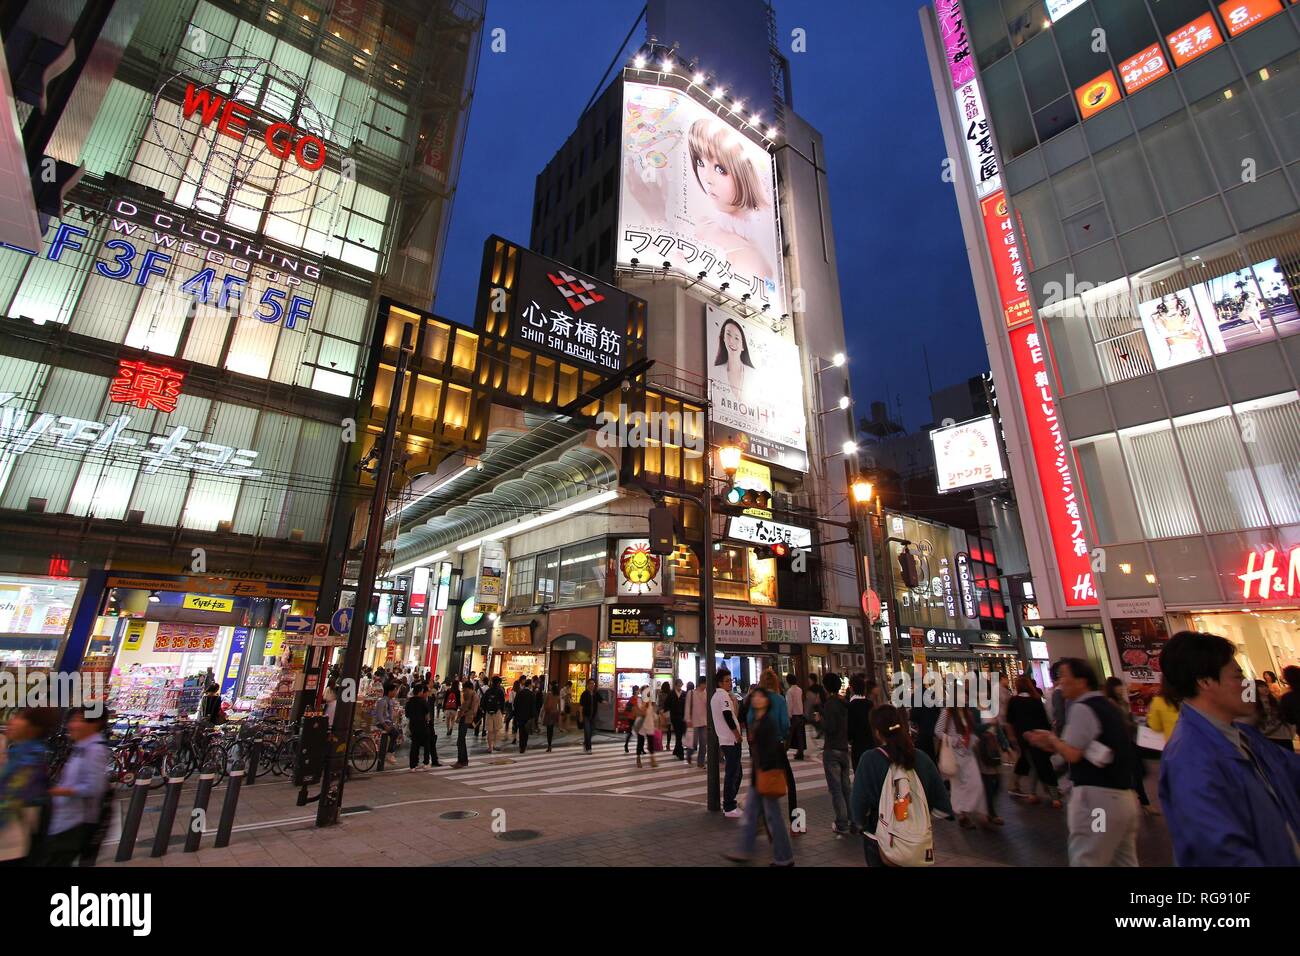 OSAKA, Giappone - 24 aprile: gli amanti dello shopping a piedi nei pressi di Shinsaibashi stree on April 24, 2012 di Osaka in Giappone. Secondo Tripadvisor, è attualmente fra i top Foto Stock